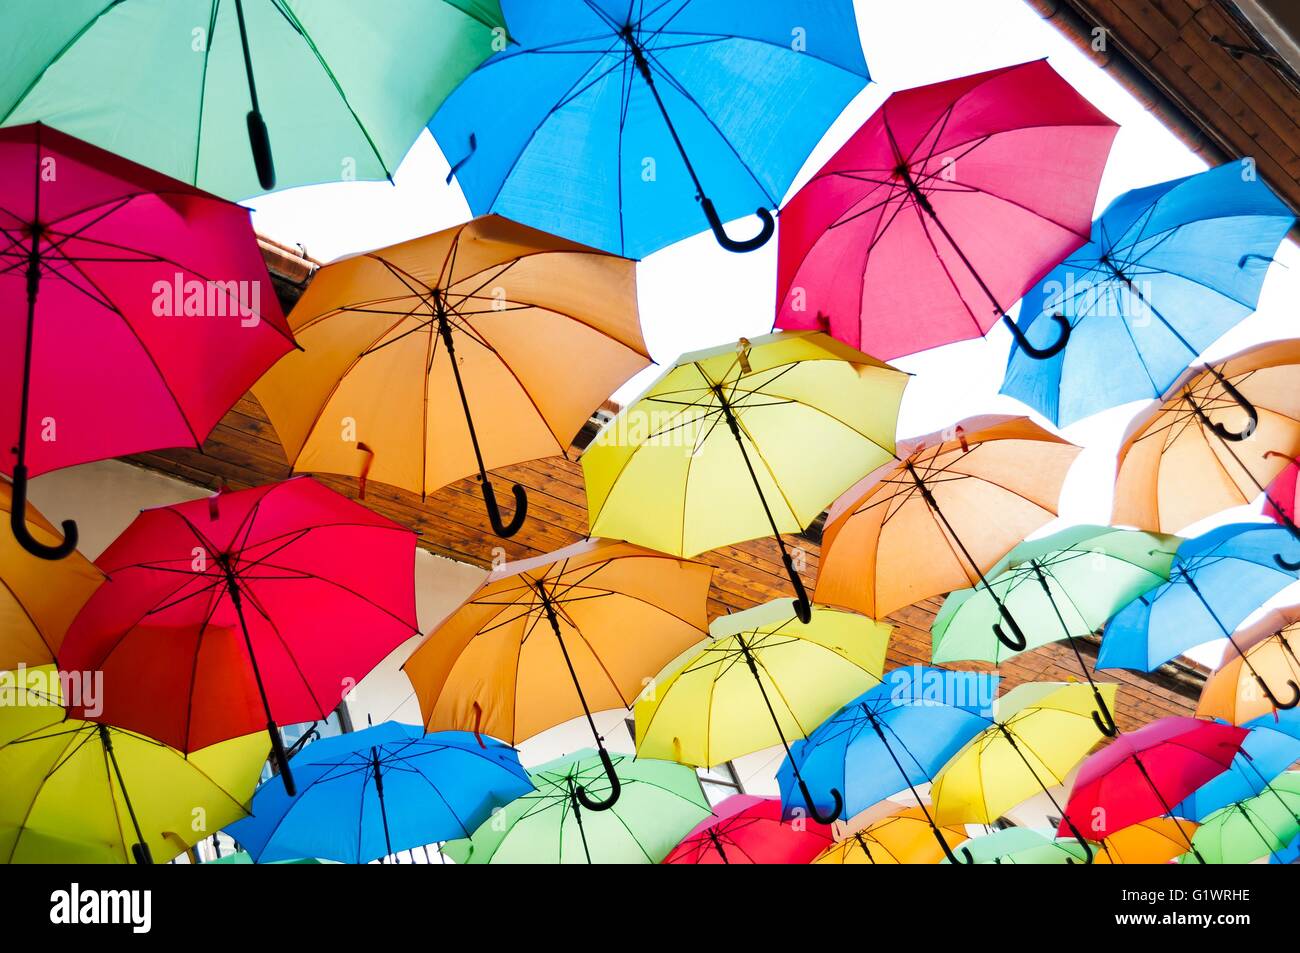 Ombrelli aperti immagini e fotografie stock ad alta risoluzione - Alamy